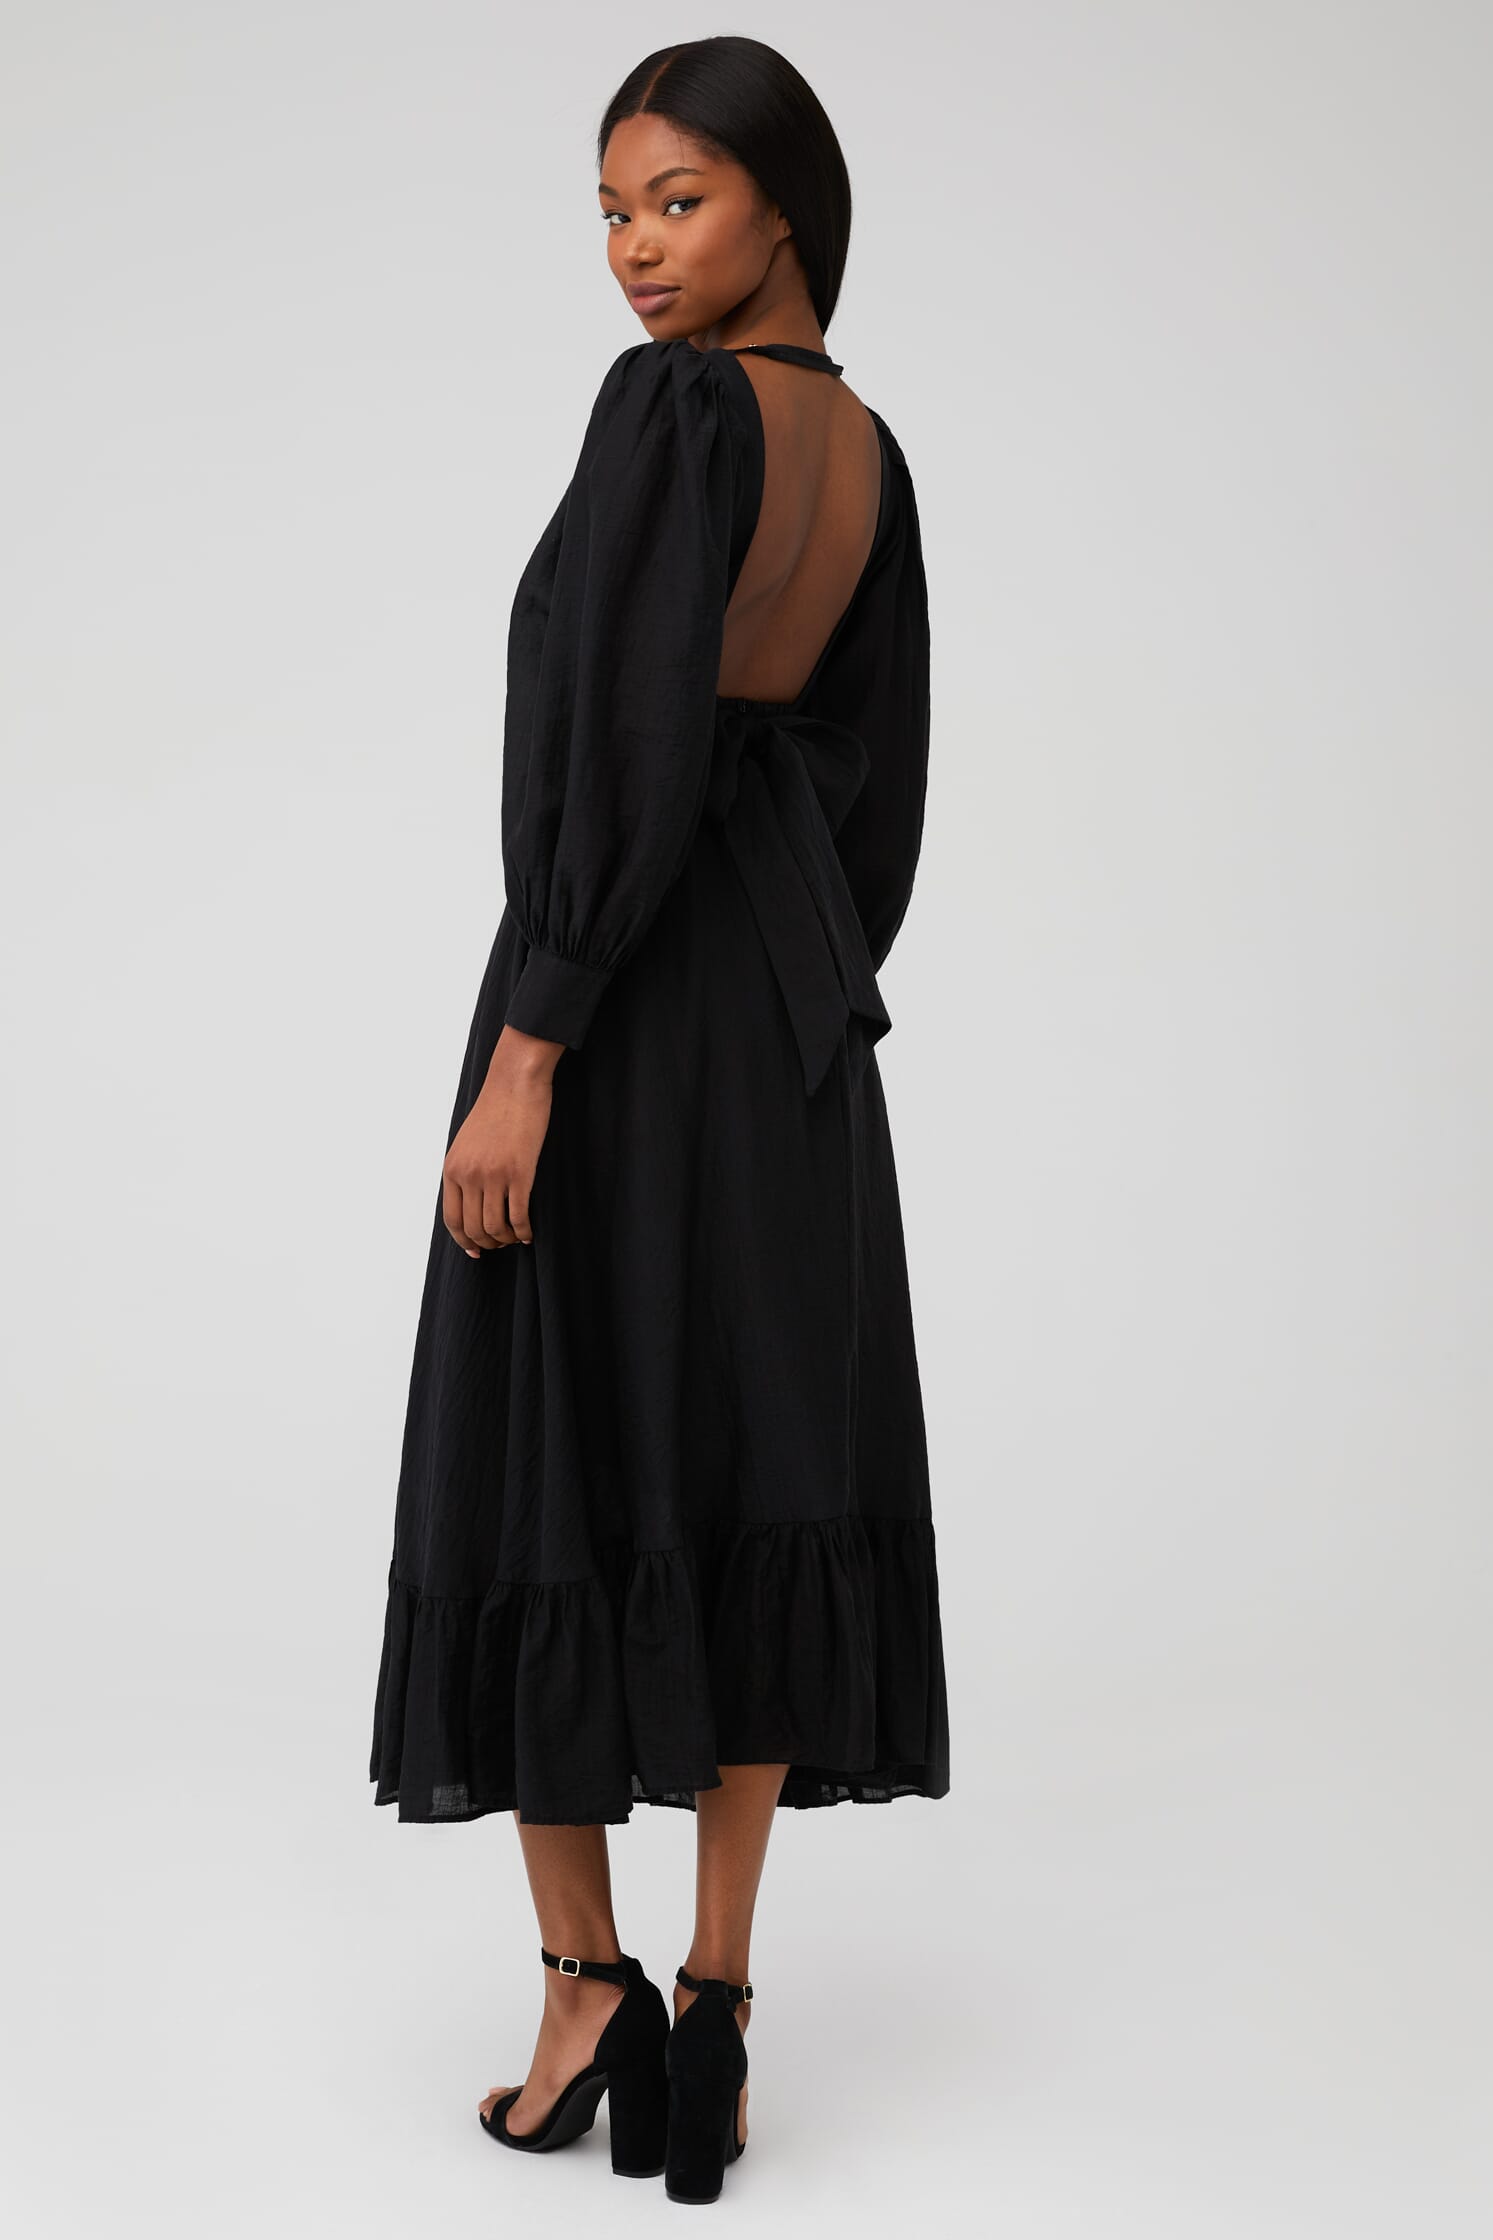 SABINA MUSAYEV | Daphna Dress in Black| FashionPass